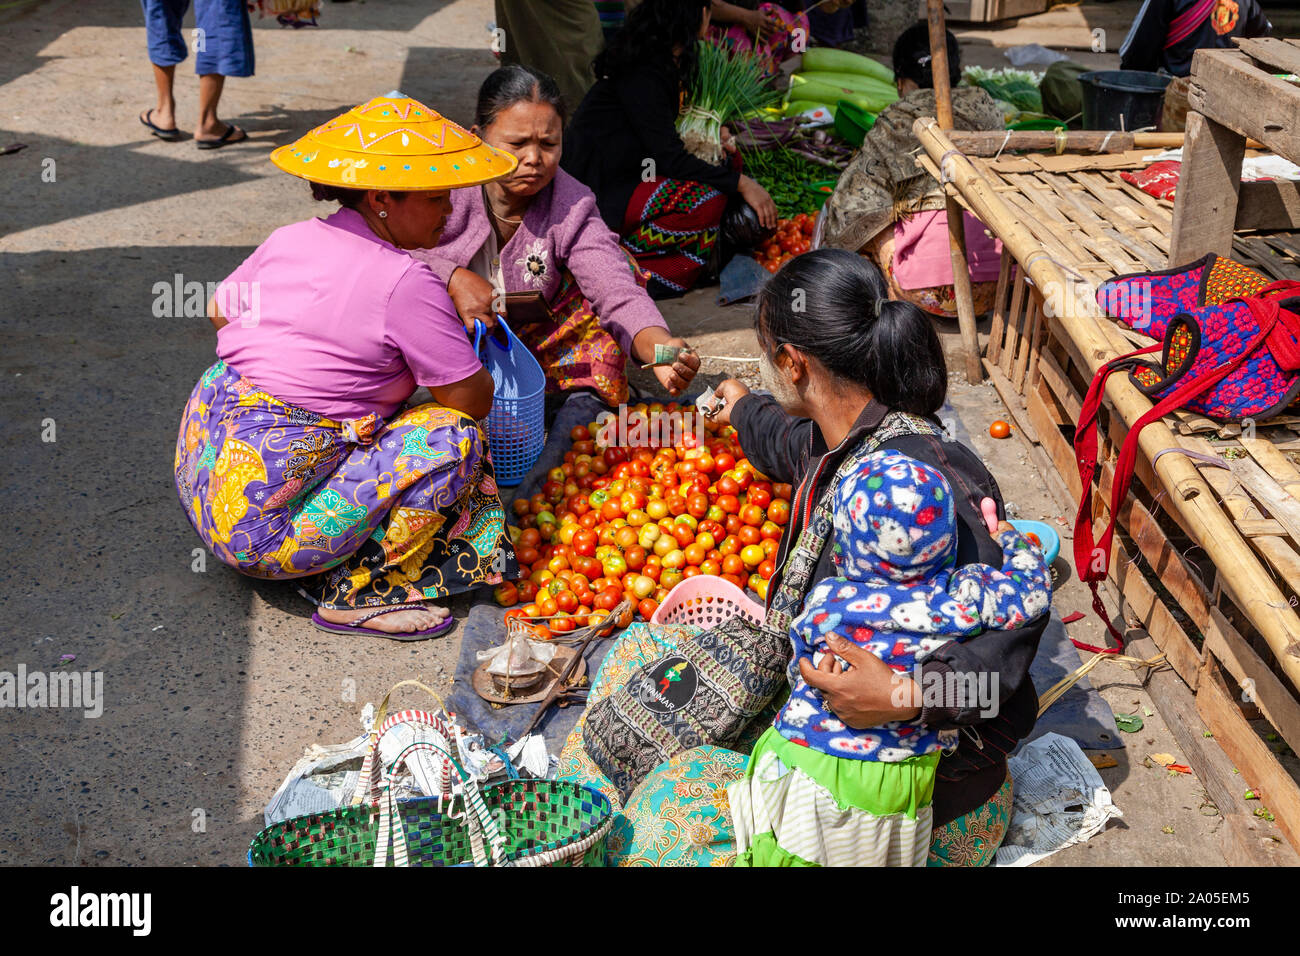 Frauen, die ethnischen Minderheiten angehören, Kauf und Verkauf von Tomaten im Mingalar Markt, Nyaung Shwe See Inle, Shan Staat, Myanmar. Stockfoto